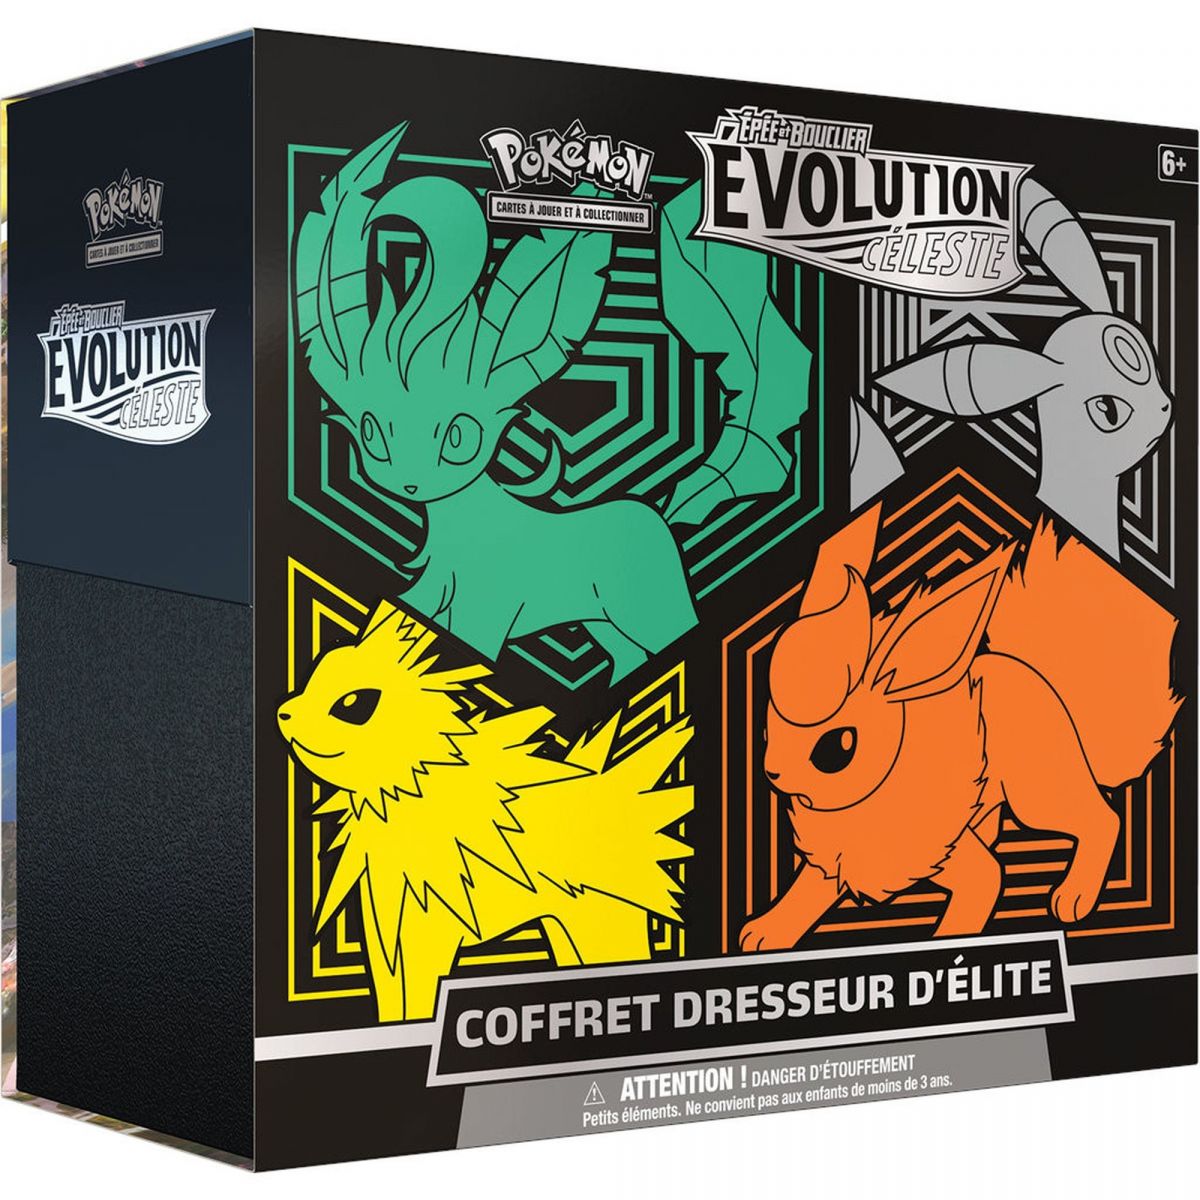 Item Pokémon - Coffret Dresseur d'Elite - Evolution Céleste V1 -  [EB07] - FR